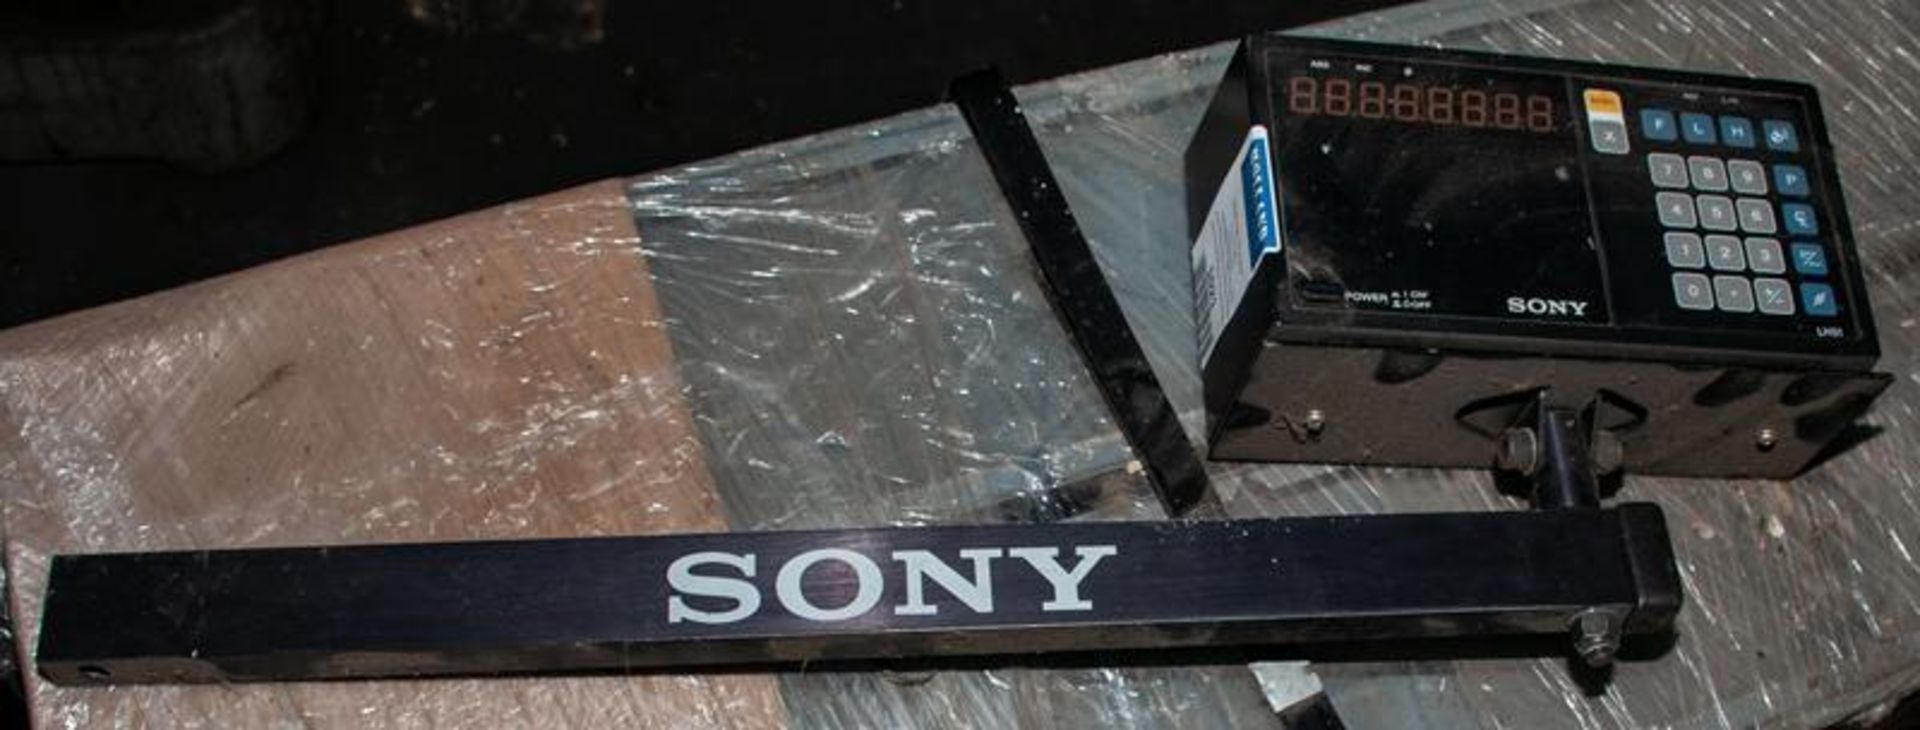 Sony LH51-1 U7 single axis digital readout, s/n H511 500284 - Image 2 of 4